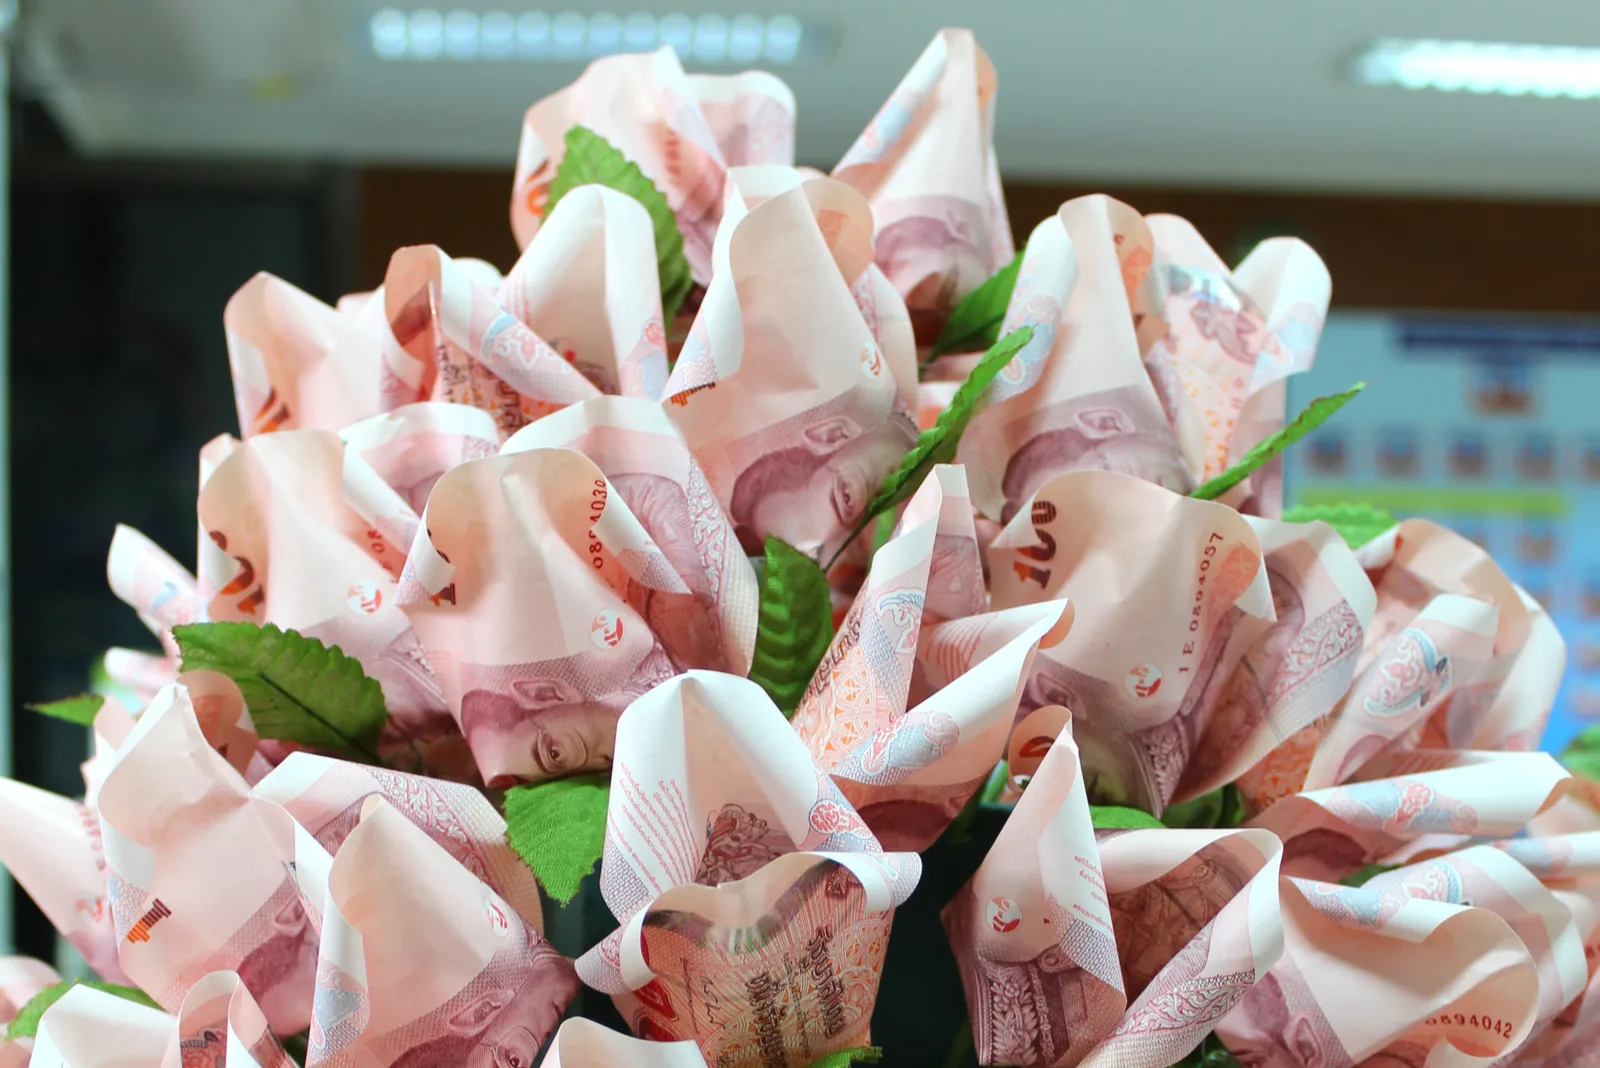 Strauß rosa Geldscheine zu Blumen gefaltet